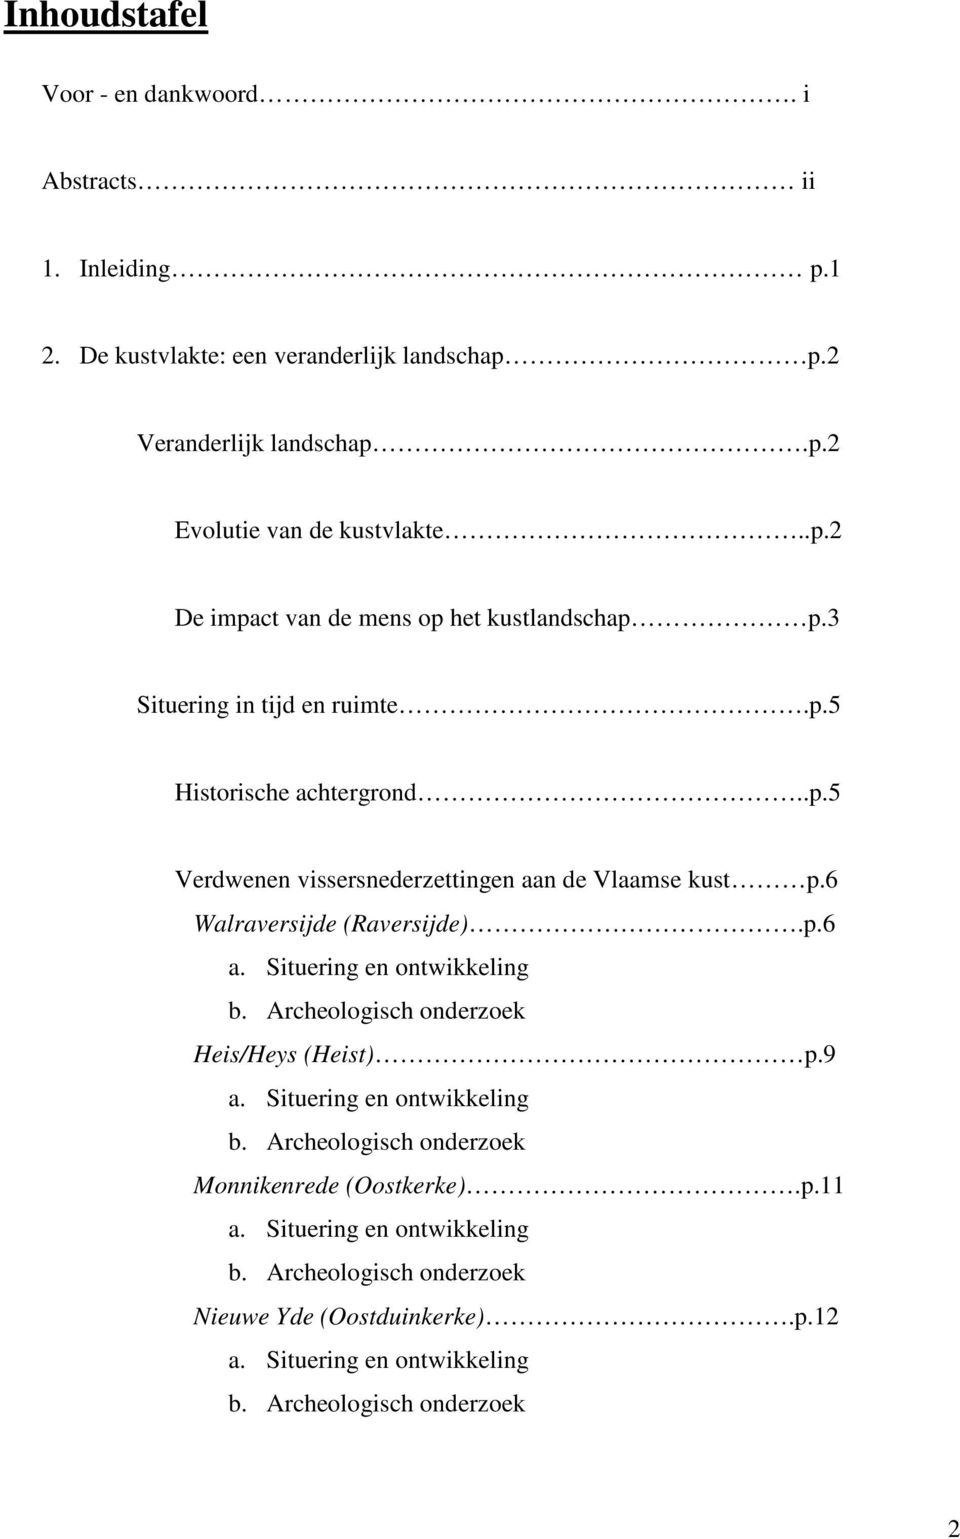 6 Walraversijde (Raversijde).p.6 a. Situering en ontwikkeling b. Archeologisch onderzoek Heis/Heys (Heist) p.9 a. Situering en ontwikkeling b. Archeologisch onderzoek Monnikenrede (Oostkerke).